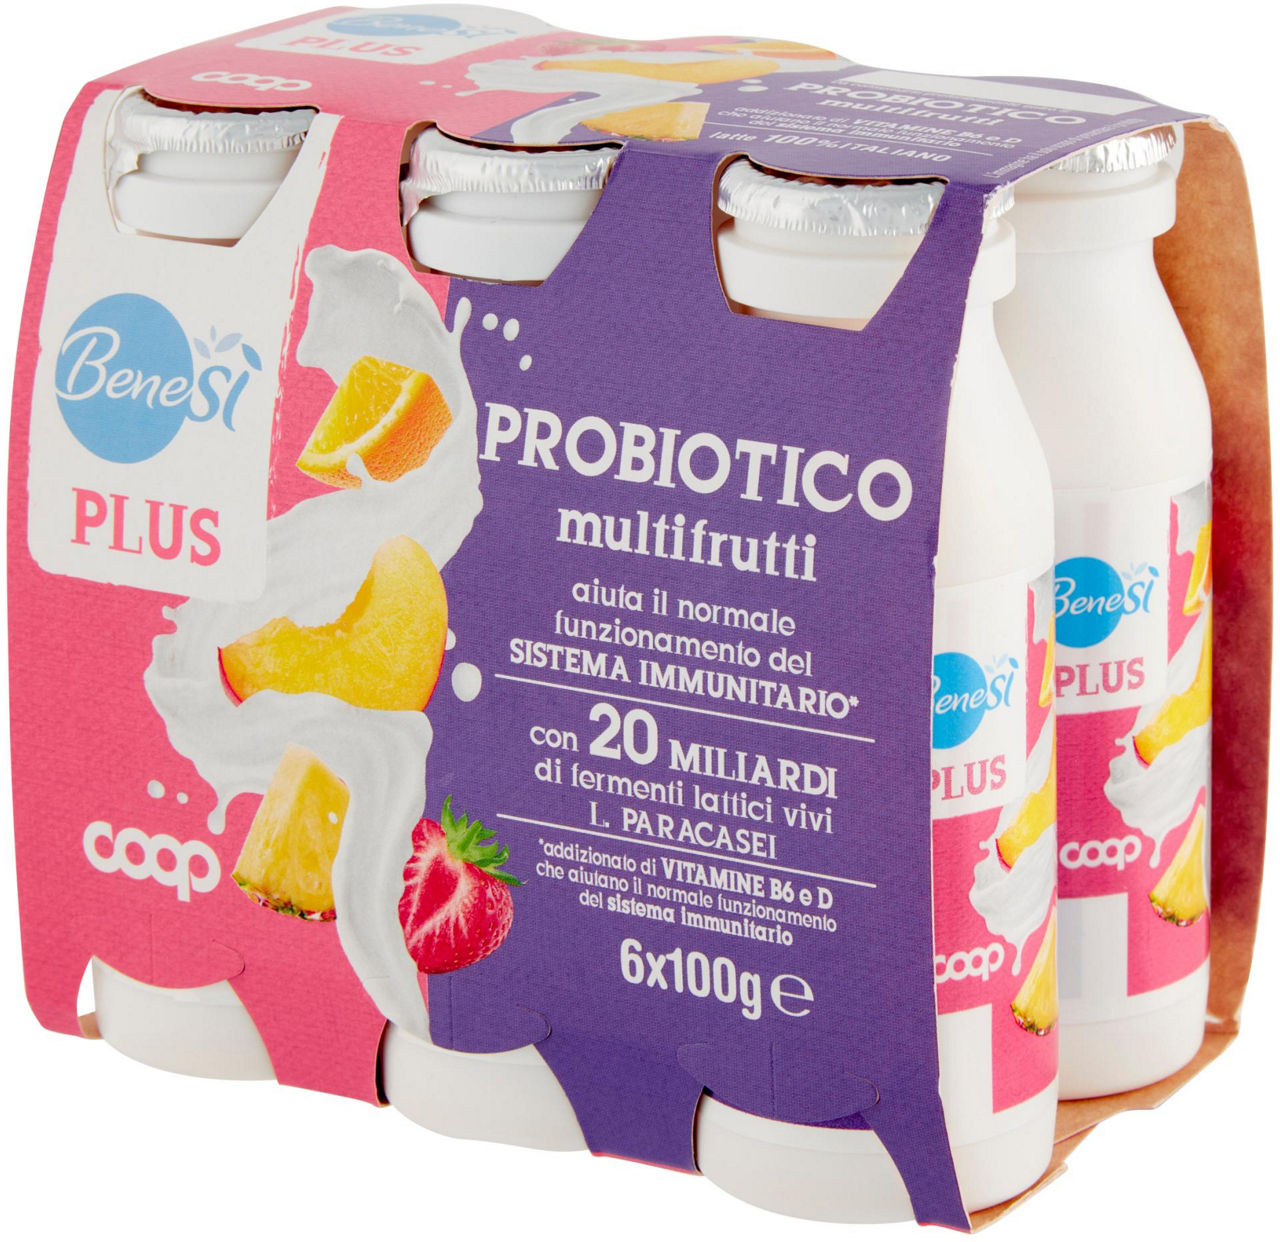 Probiotico multifrutti Benes' Plus 6 x 100 g - Immagine 61